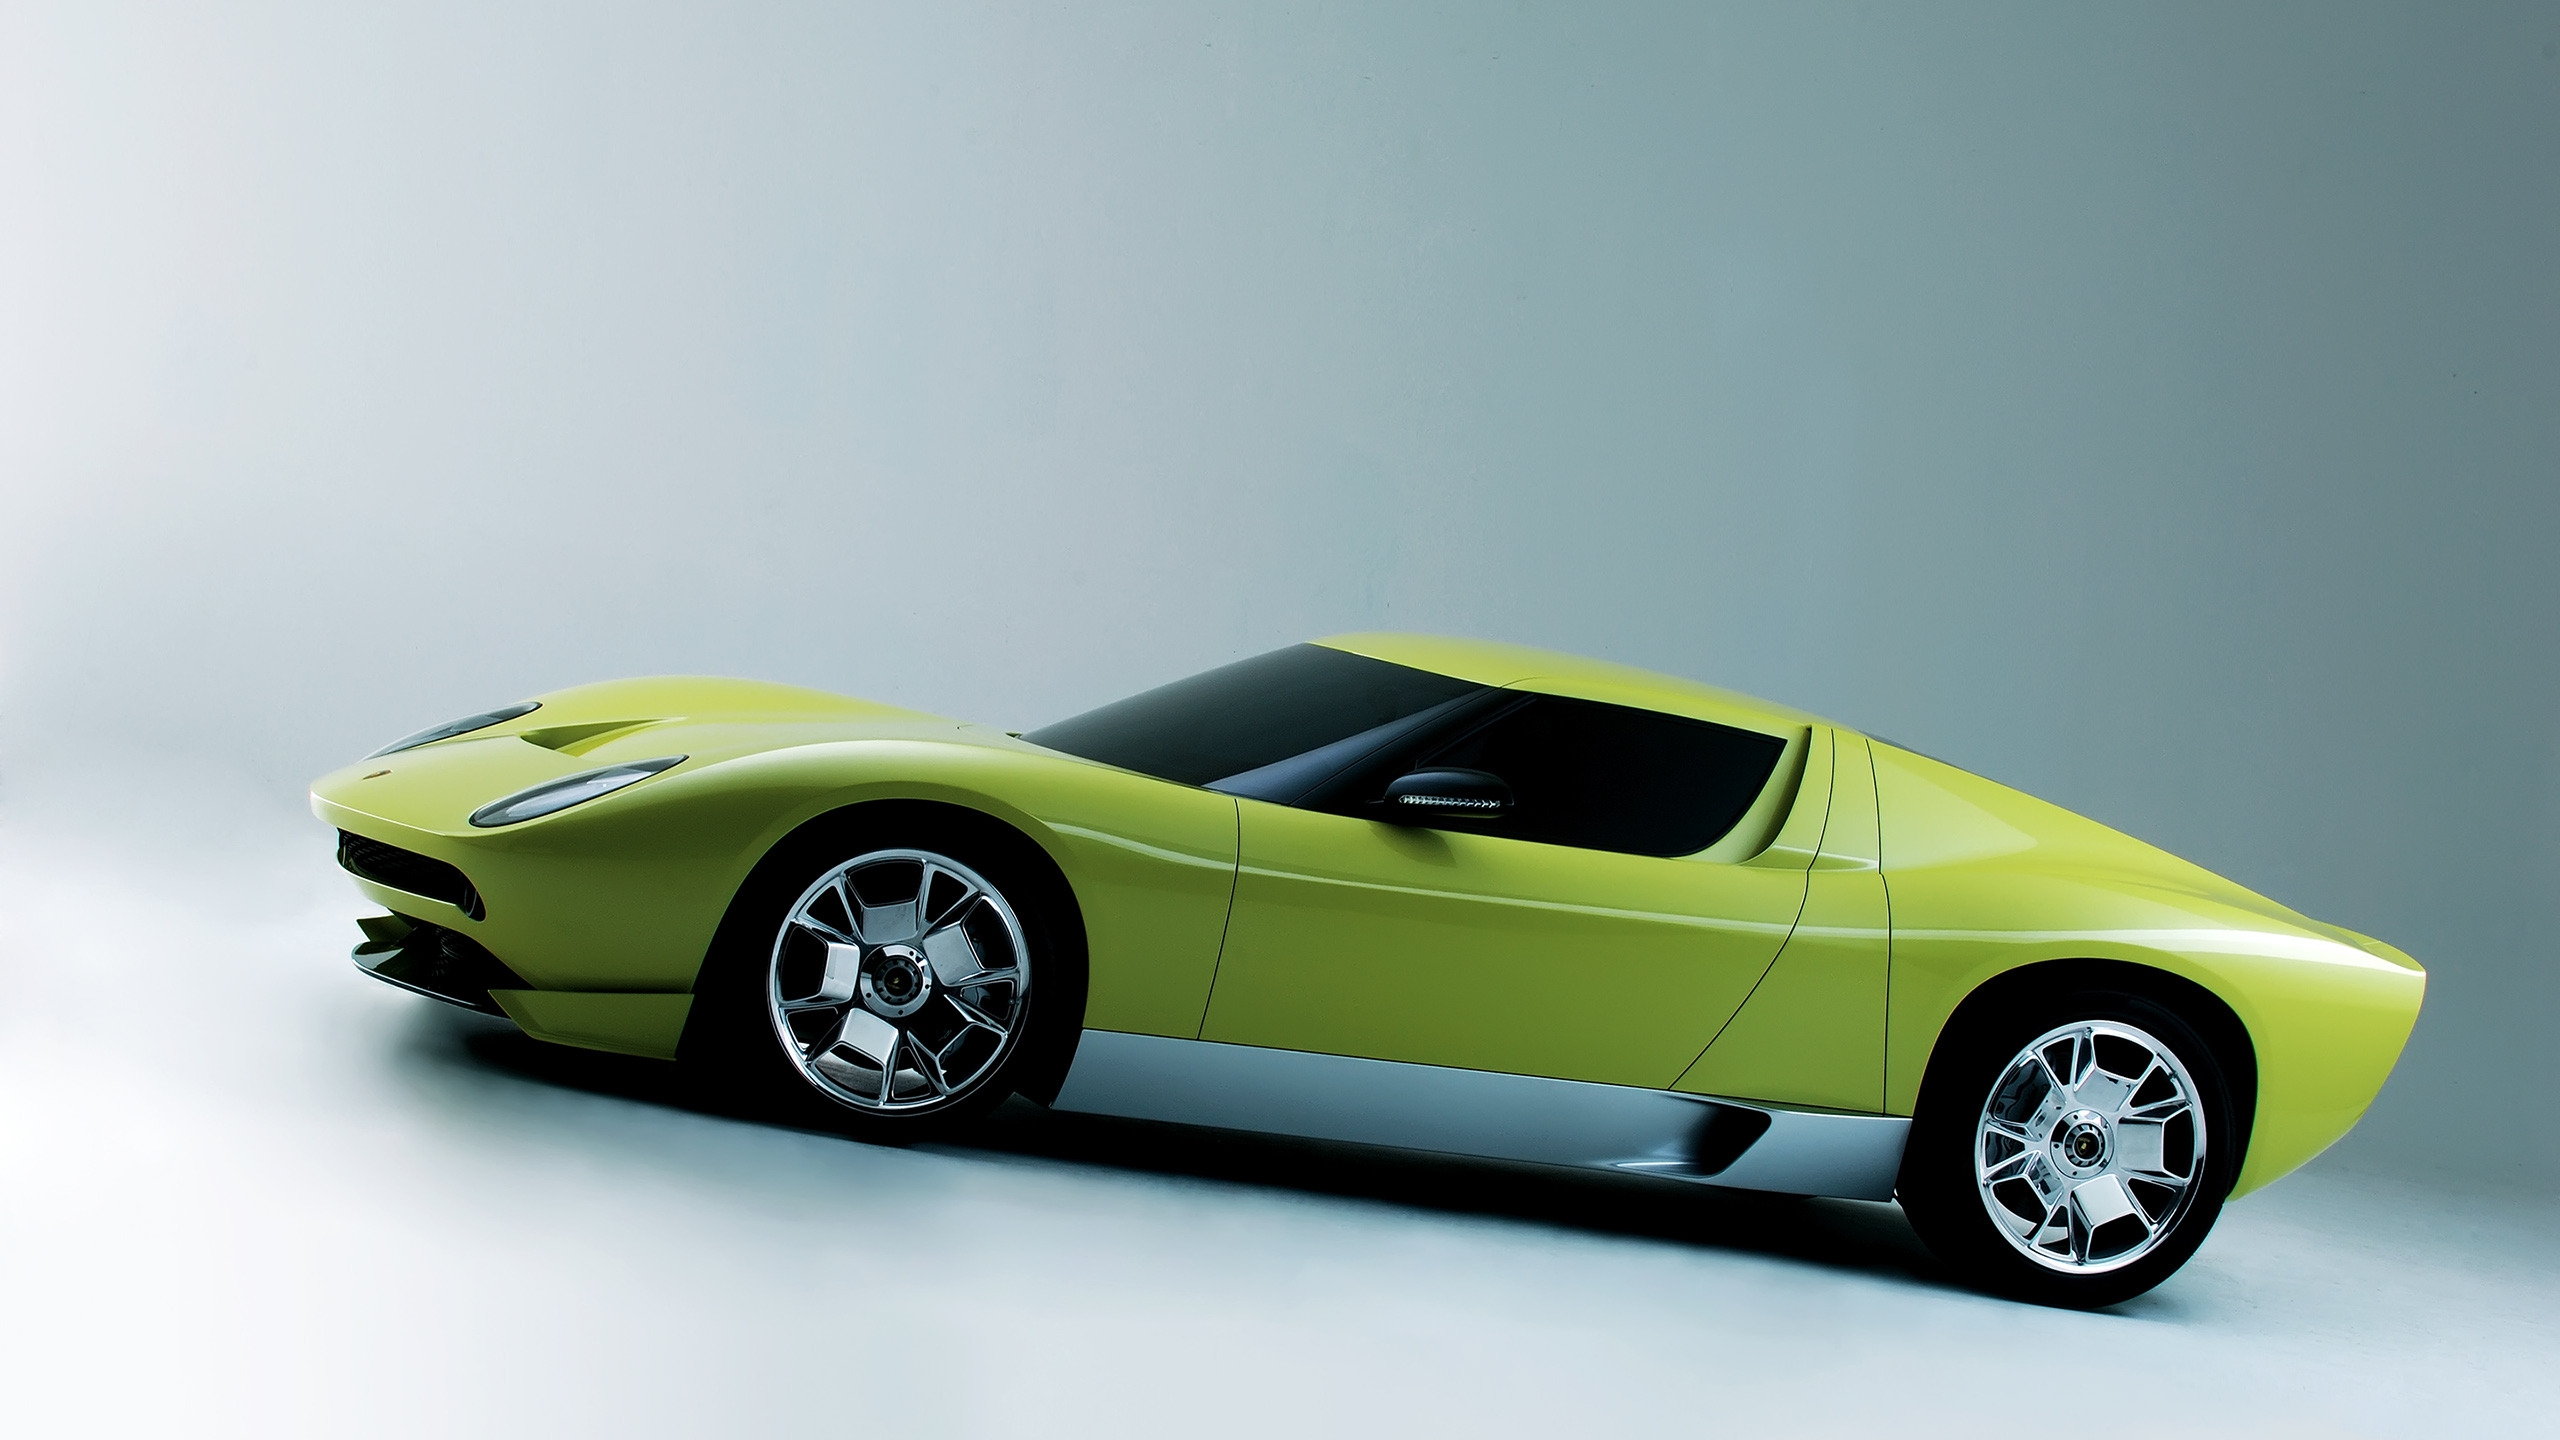 Lamborghini Miura Concept Side for 2560x1440 HDTV resolution